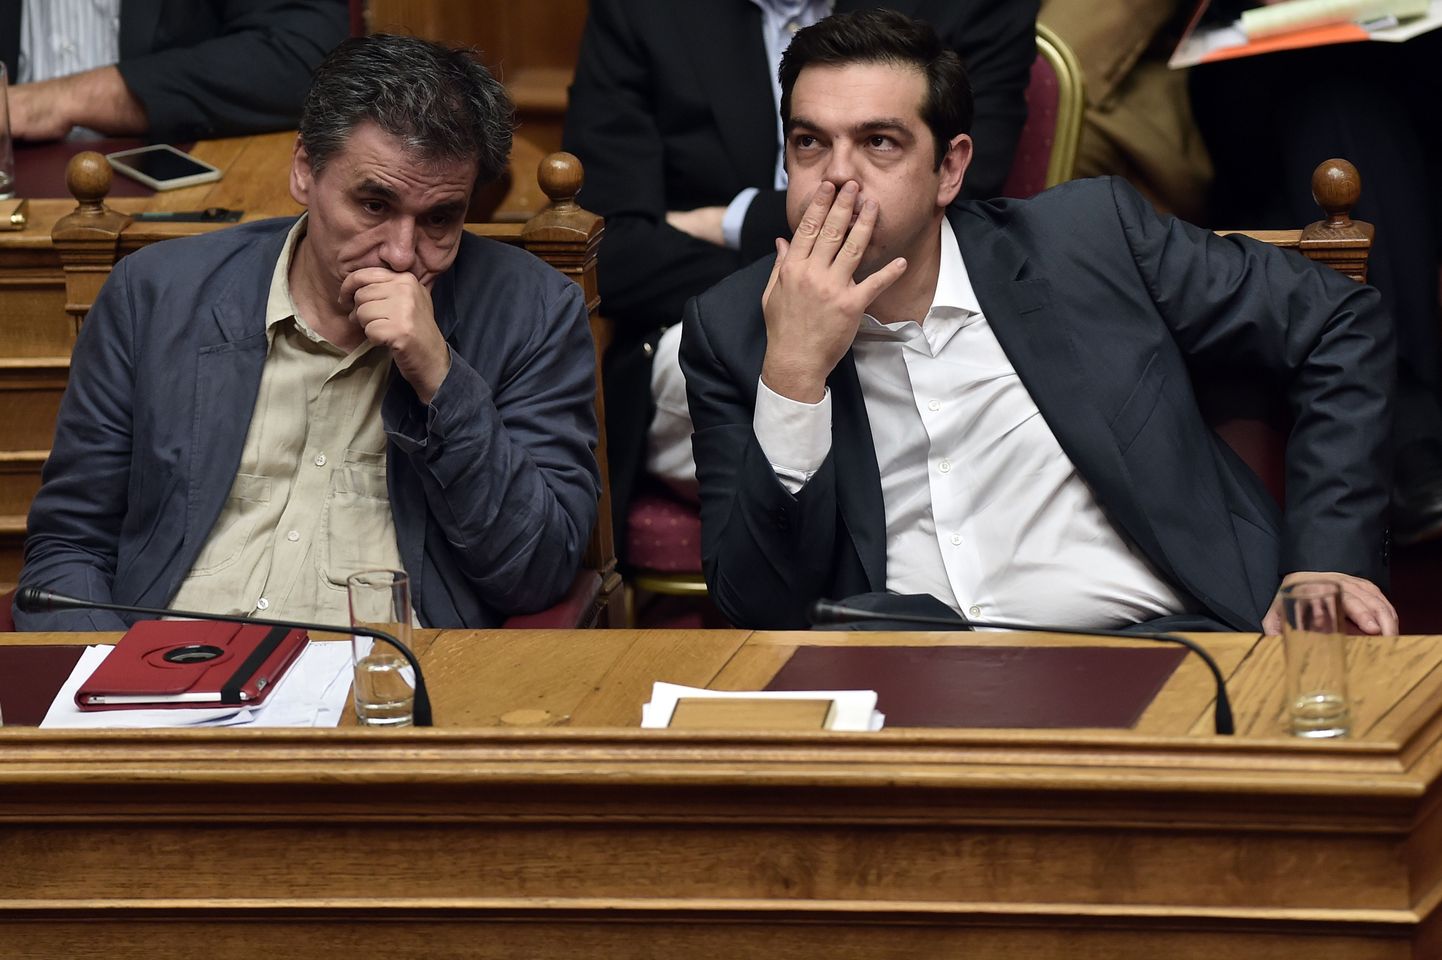 Kreeka valitsusjuht Alexis Tsipras ööl vastu eilset riigi parlamendis peetud debatti jälgimas.